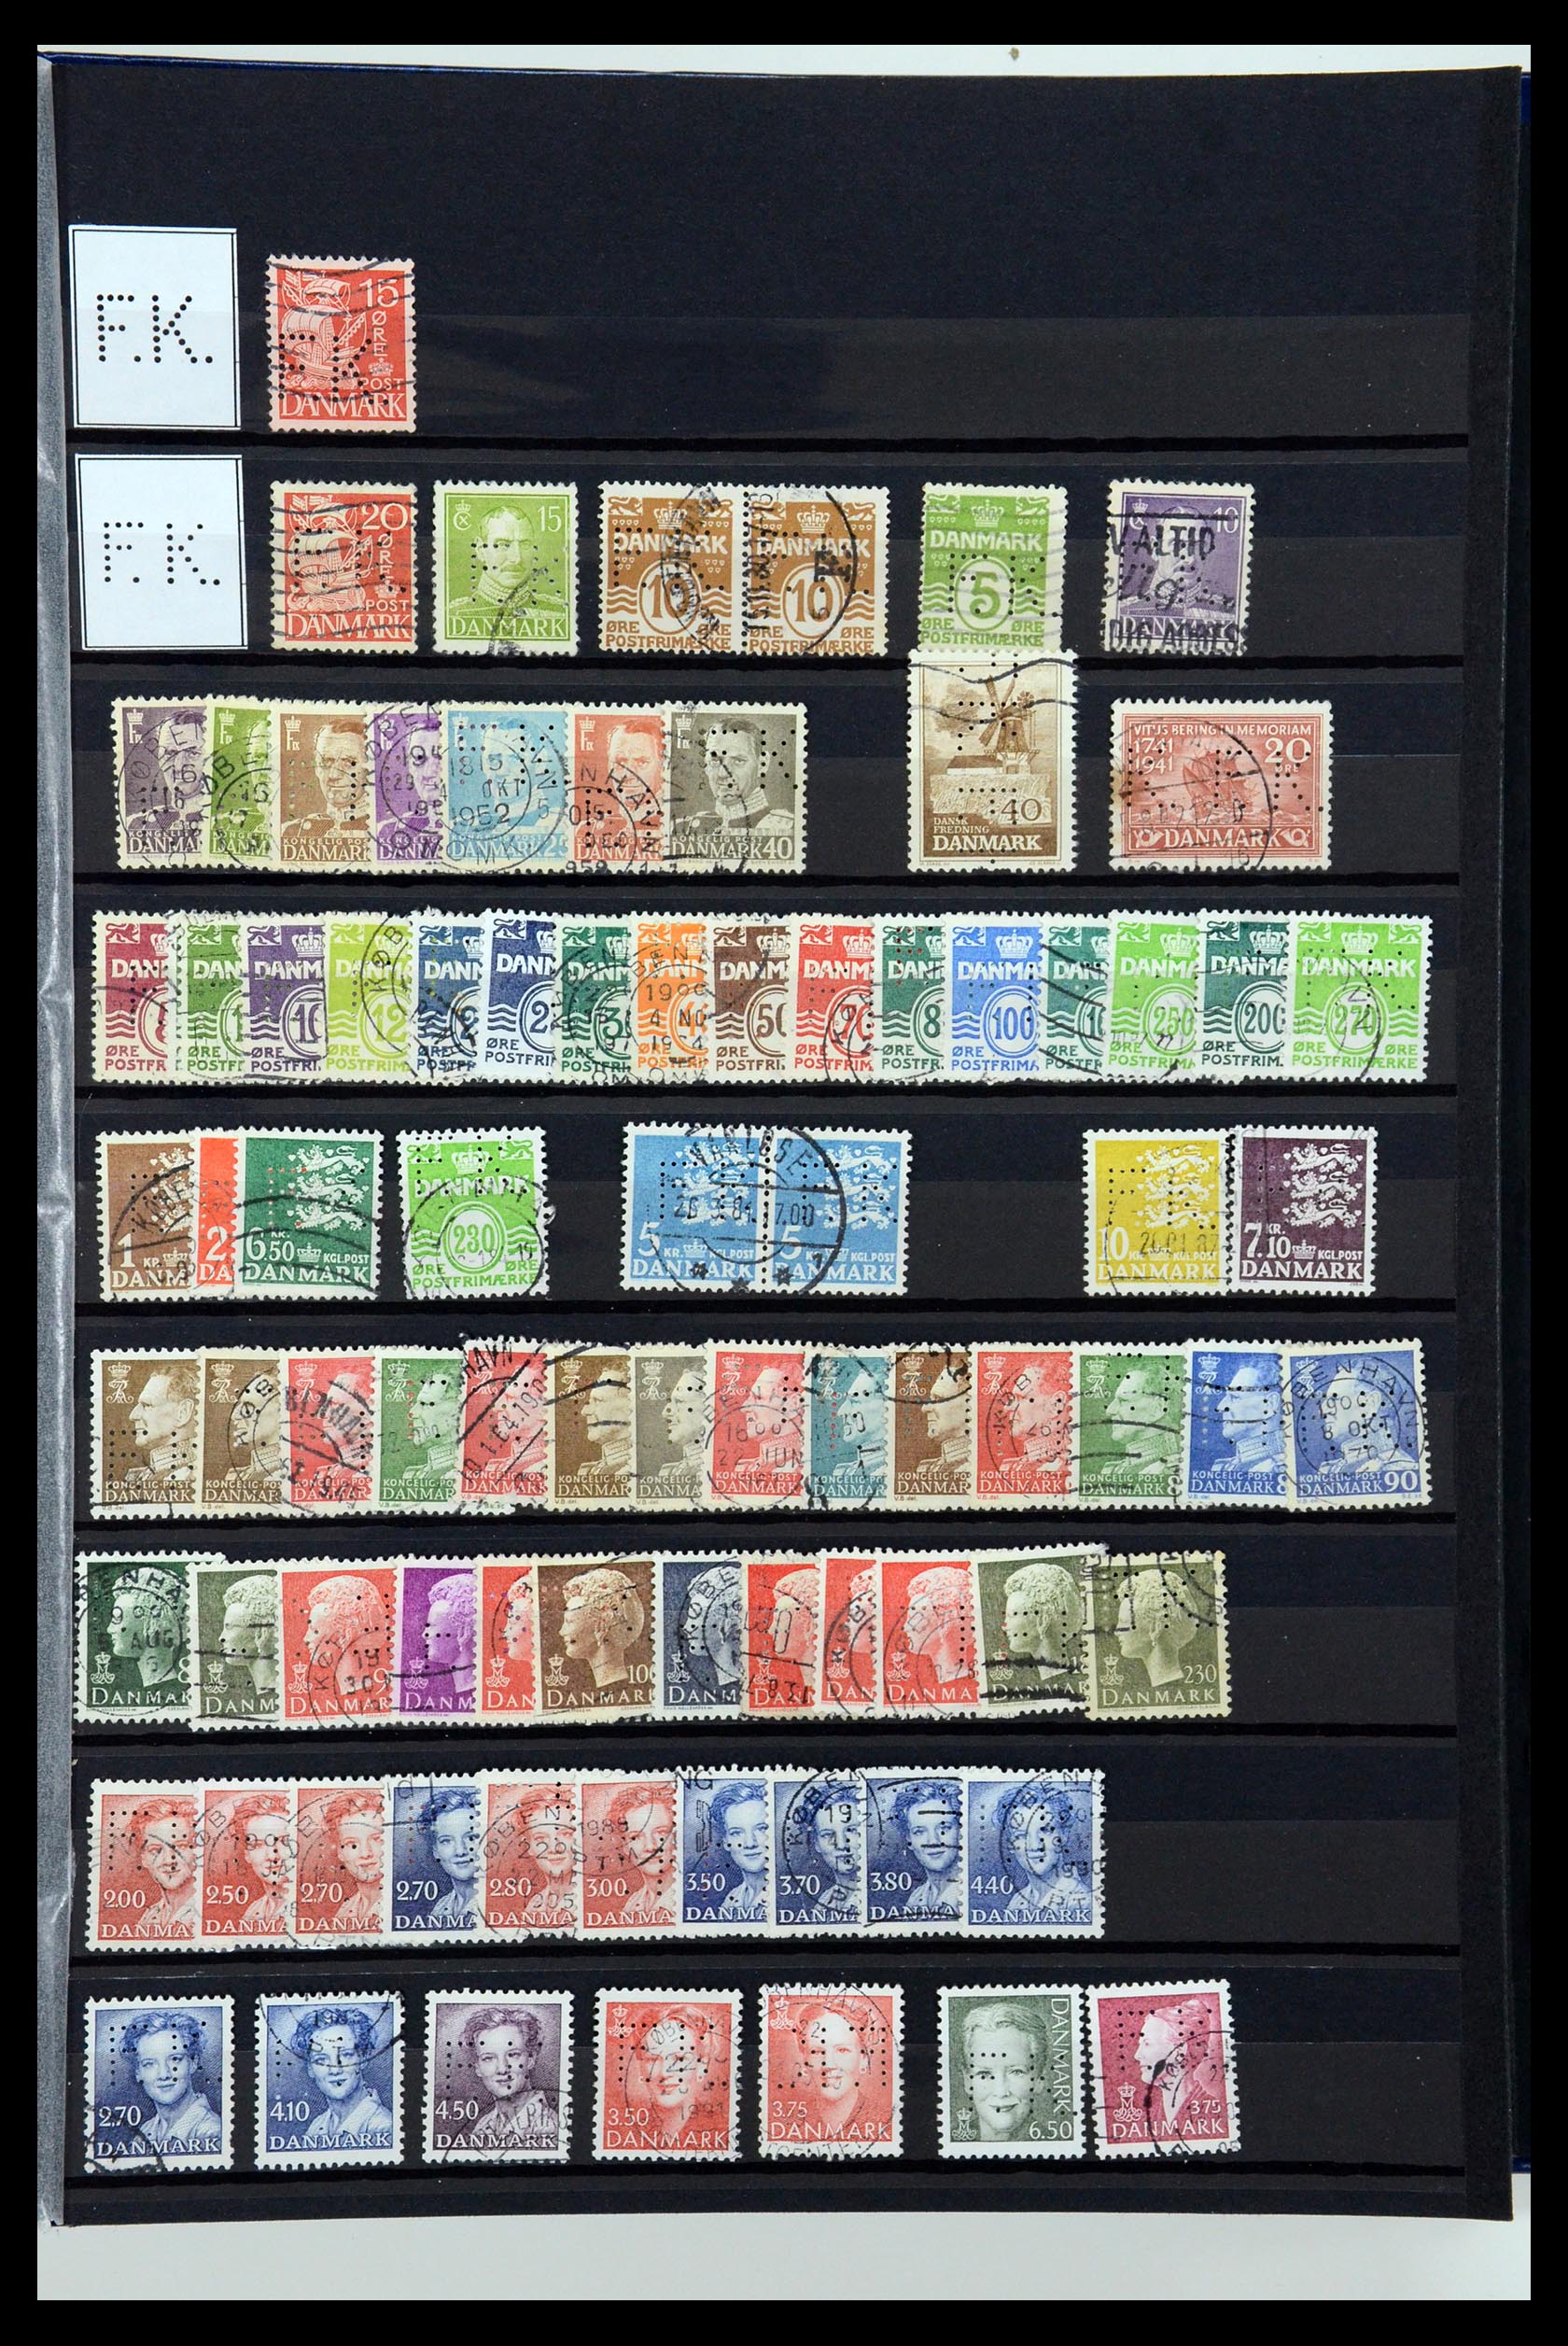 36396 052 - Postzegelverzameling 36396 Denemarken perfins.